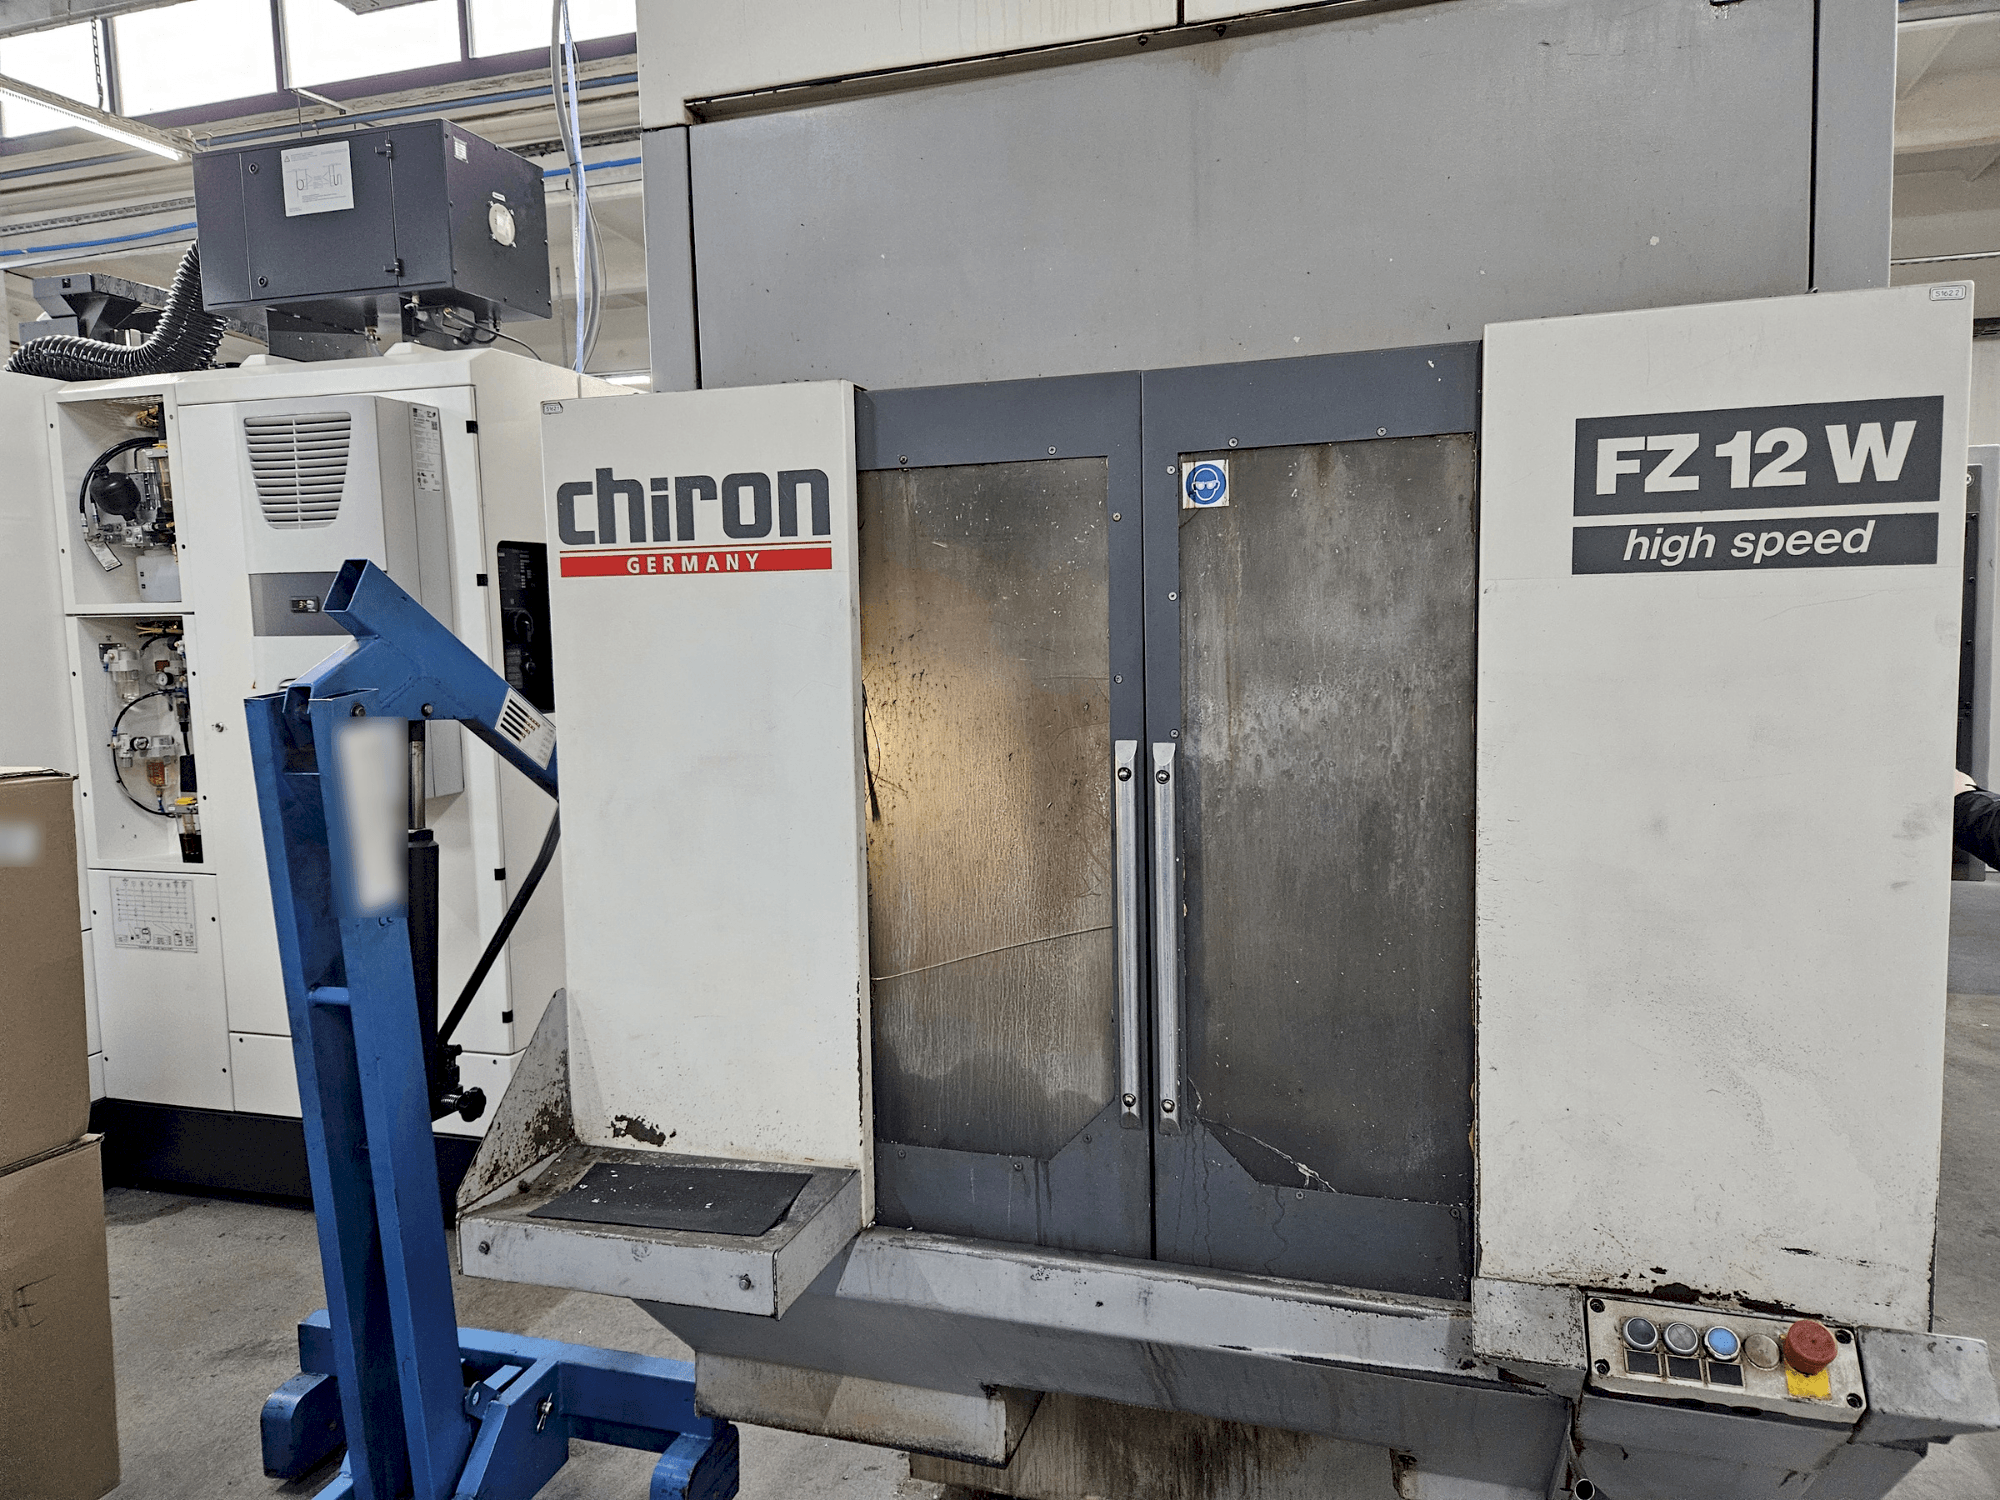 Frontansicht der CHIRON FZ12 W  Maschine